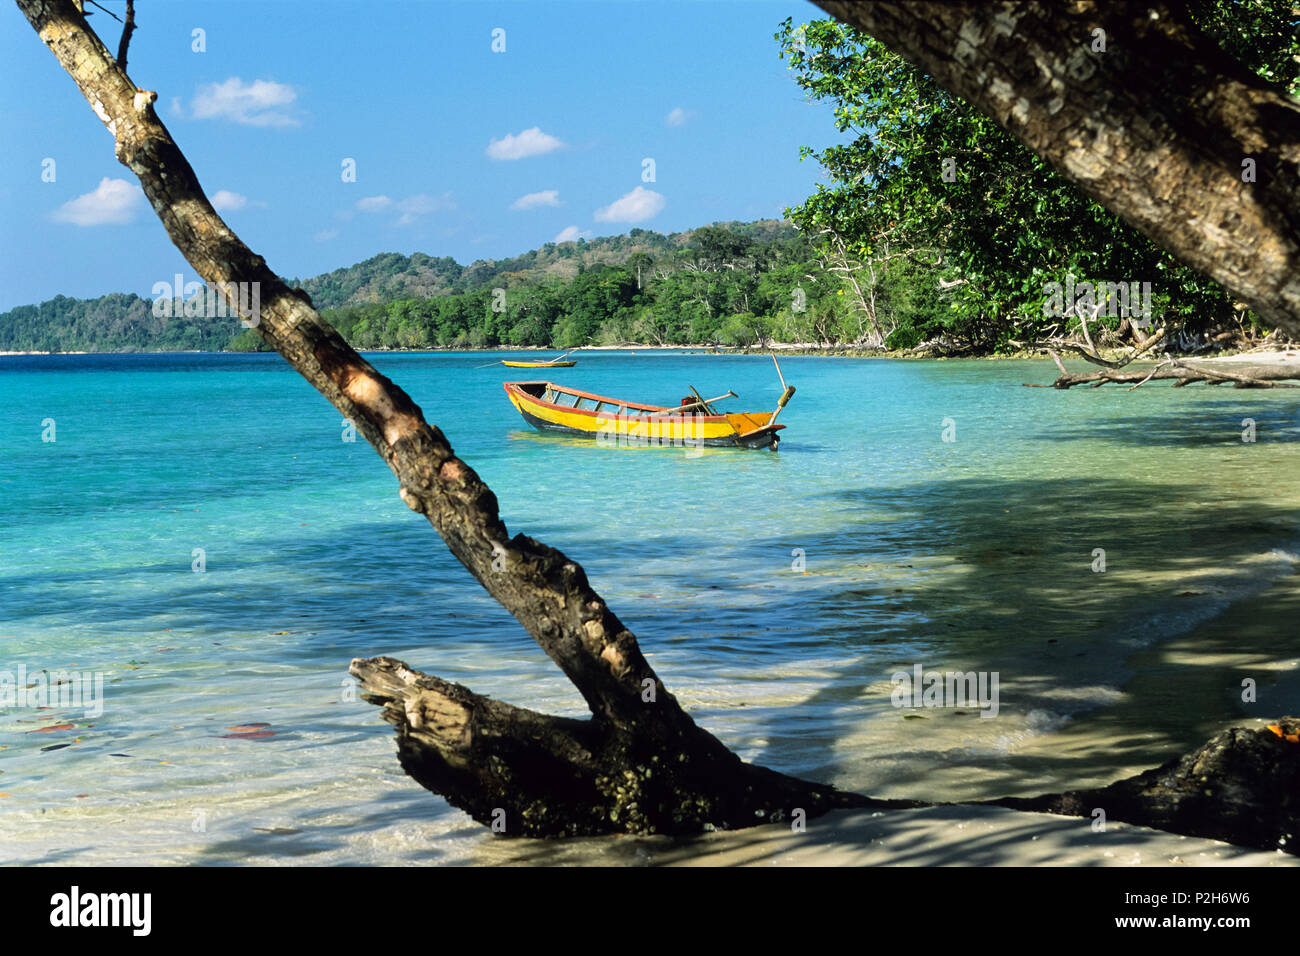 La foresta pluviale incontra beach, elefante spiaggia con barche, Havelock Island Isole Andamane, India Foto Stock